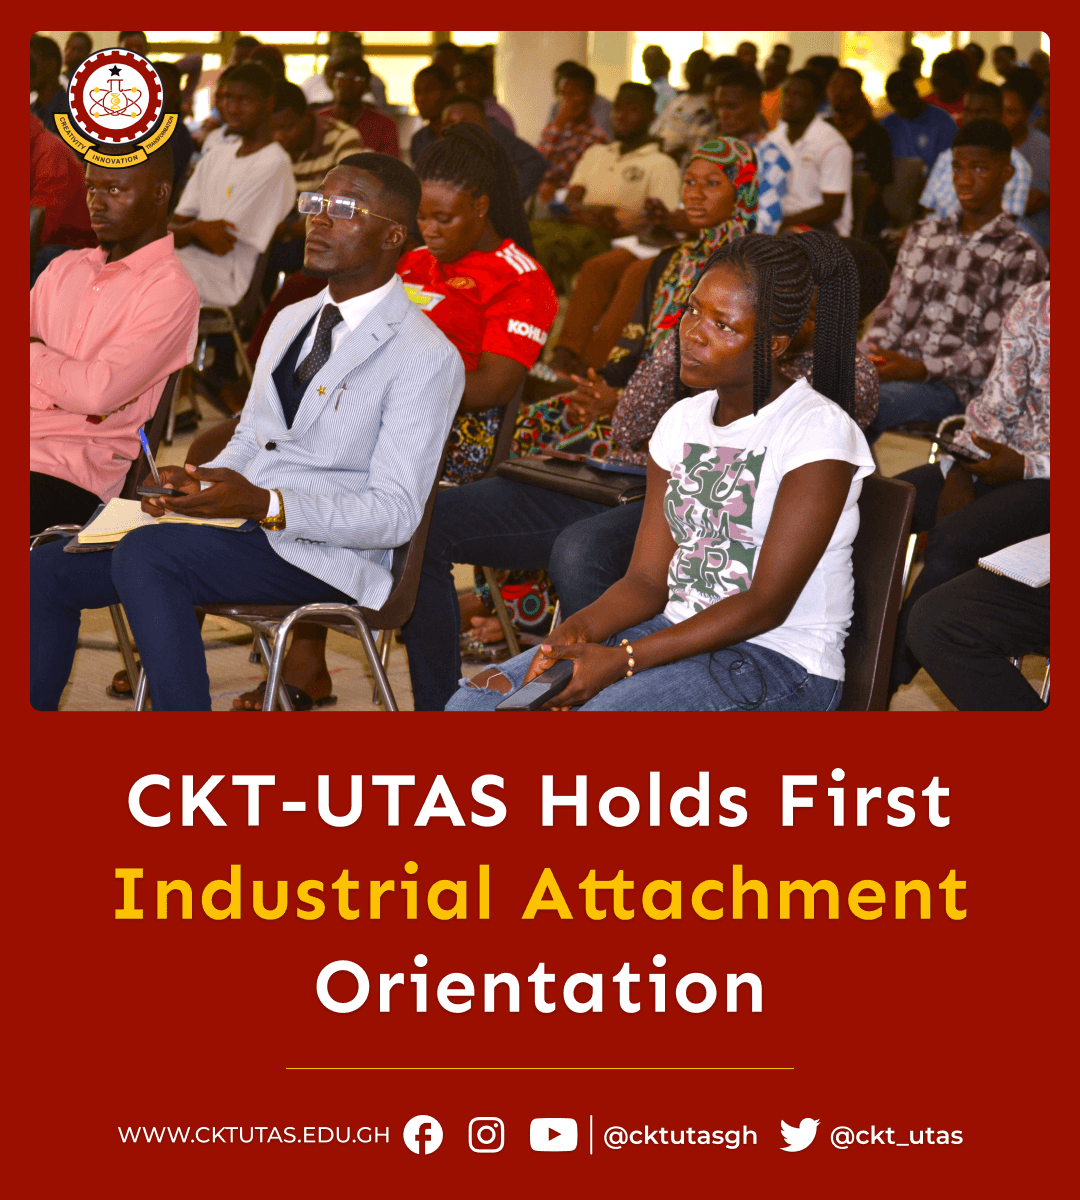 Industrial Attachment Orientation - CKT-UTAS